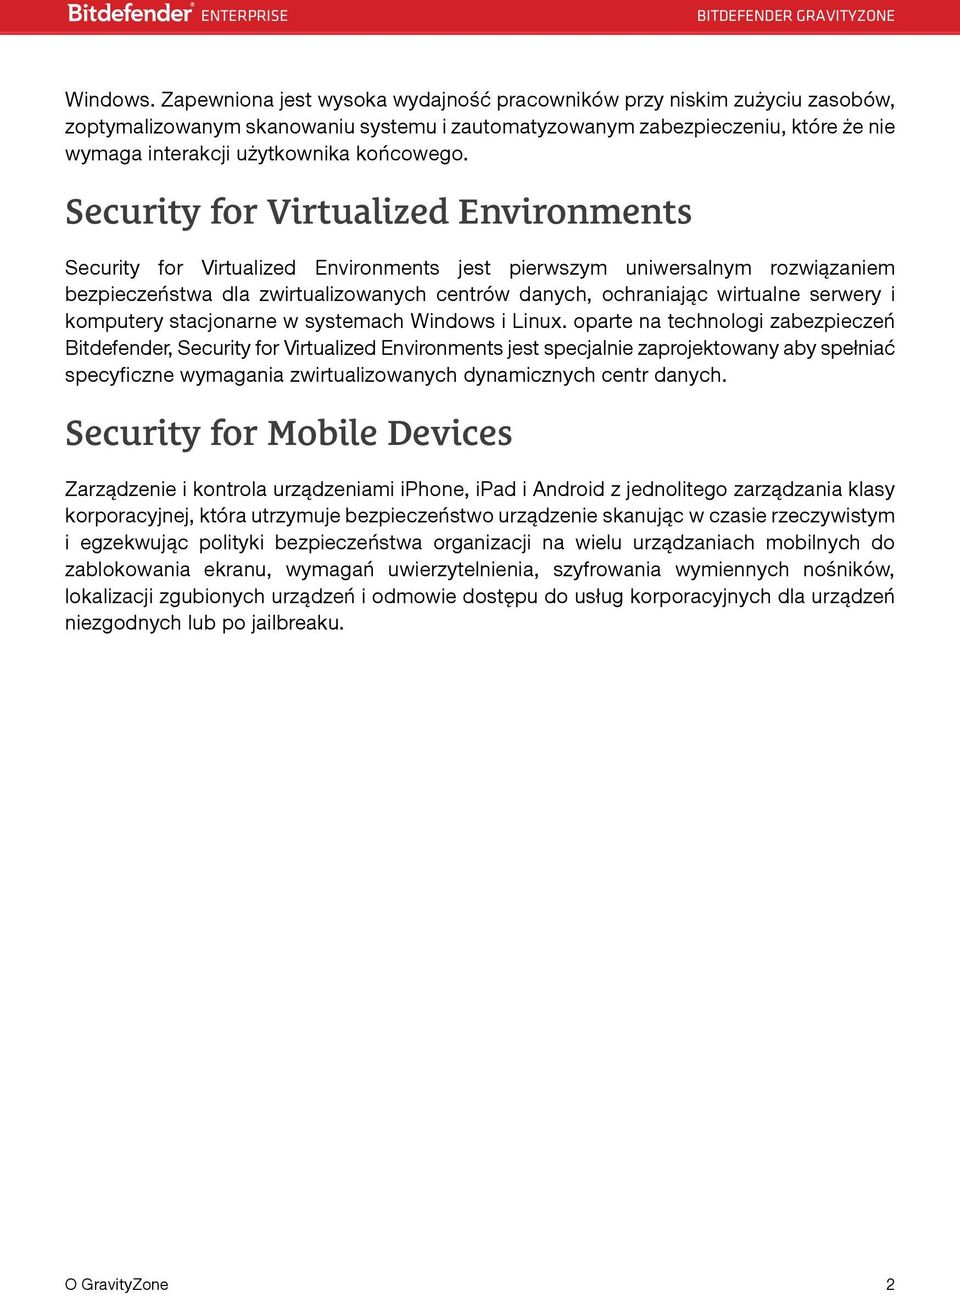 Security for Virtualized Environments Security for Virtualized Environments jest pierwszym uniwersalnym rozwiązaniem bezpieczeństwa dla zwirtualizowanych centrów danych, ochraniając wirtualne serwery